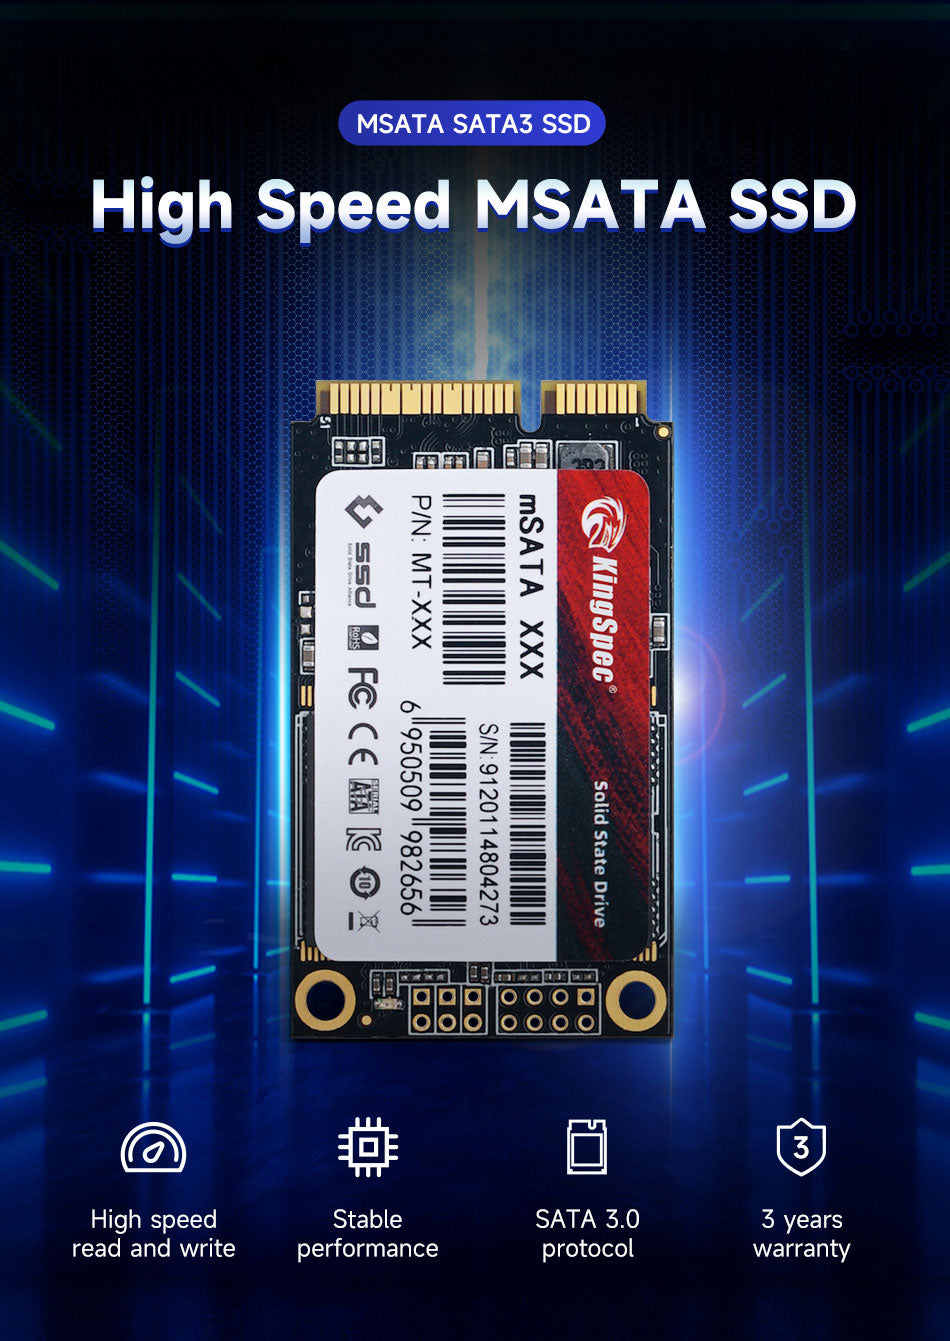 ជី ធី ស៊ី កុំព្យូទ័រ - GTC Computer - SSD KingSpec MSH-128 mini mSATA 128GB  + Condition New + Price : 40$ + 1 Year Warranty Technical Specifications: -  Name: MSH-128 - Capacity